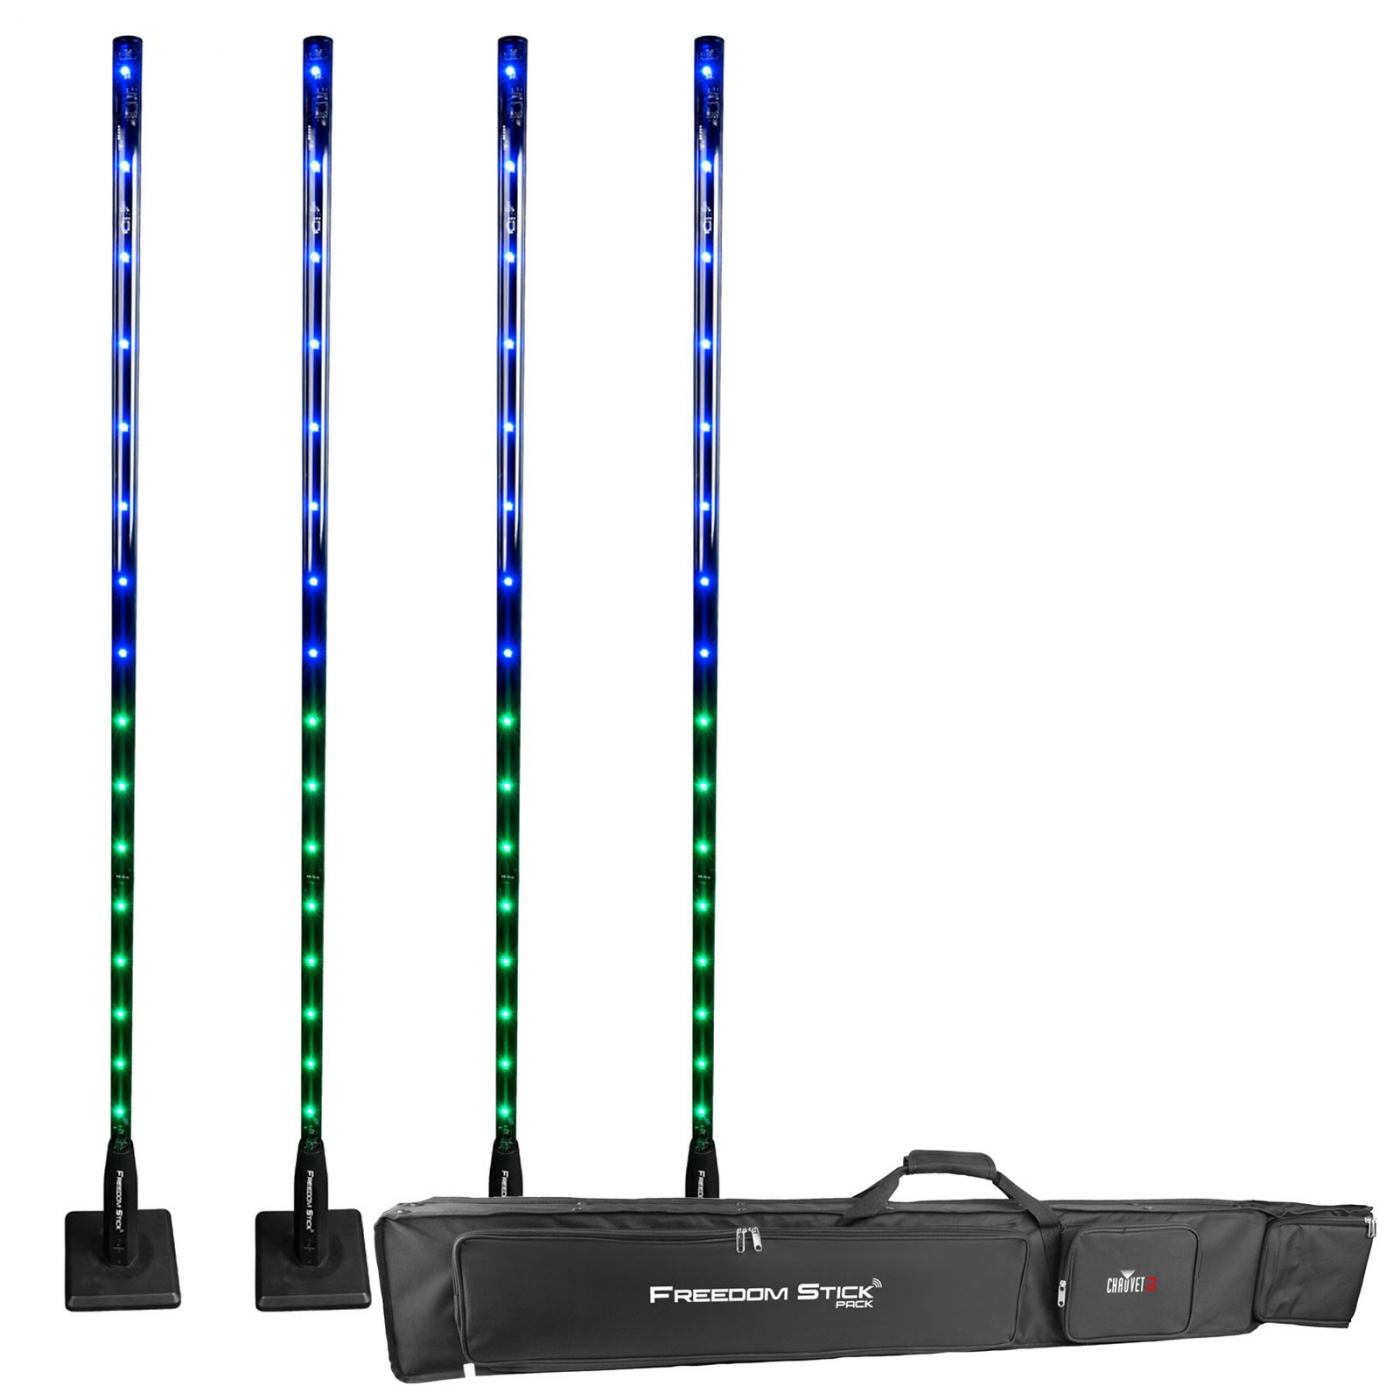 LED statická bateriová – Freedom stick bezdrátový